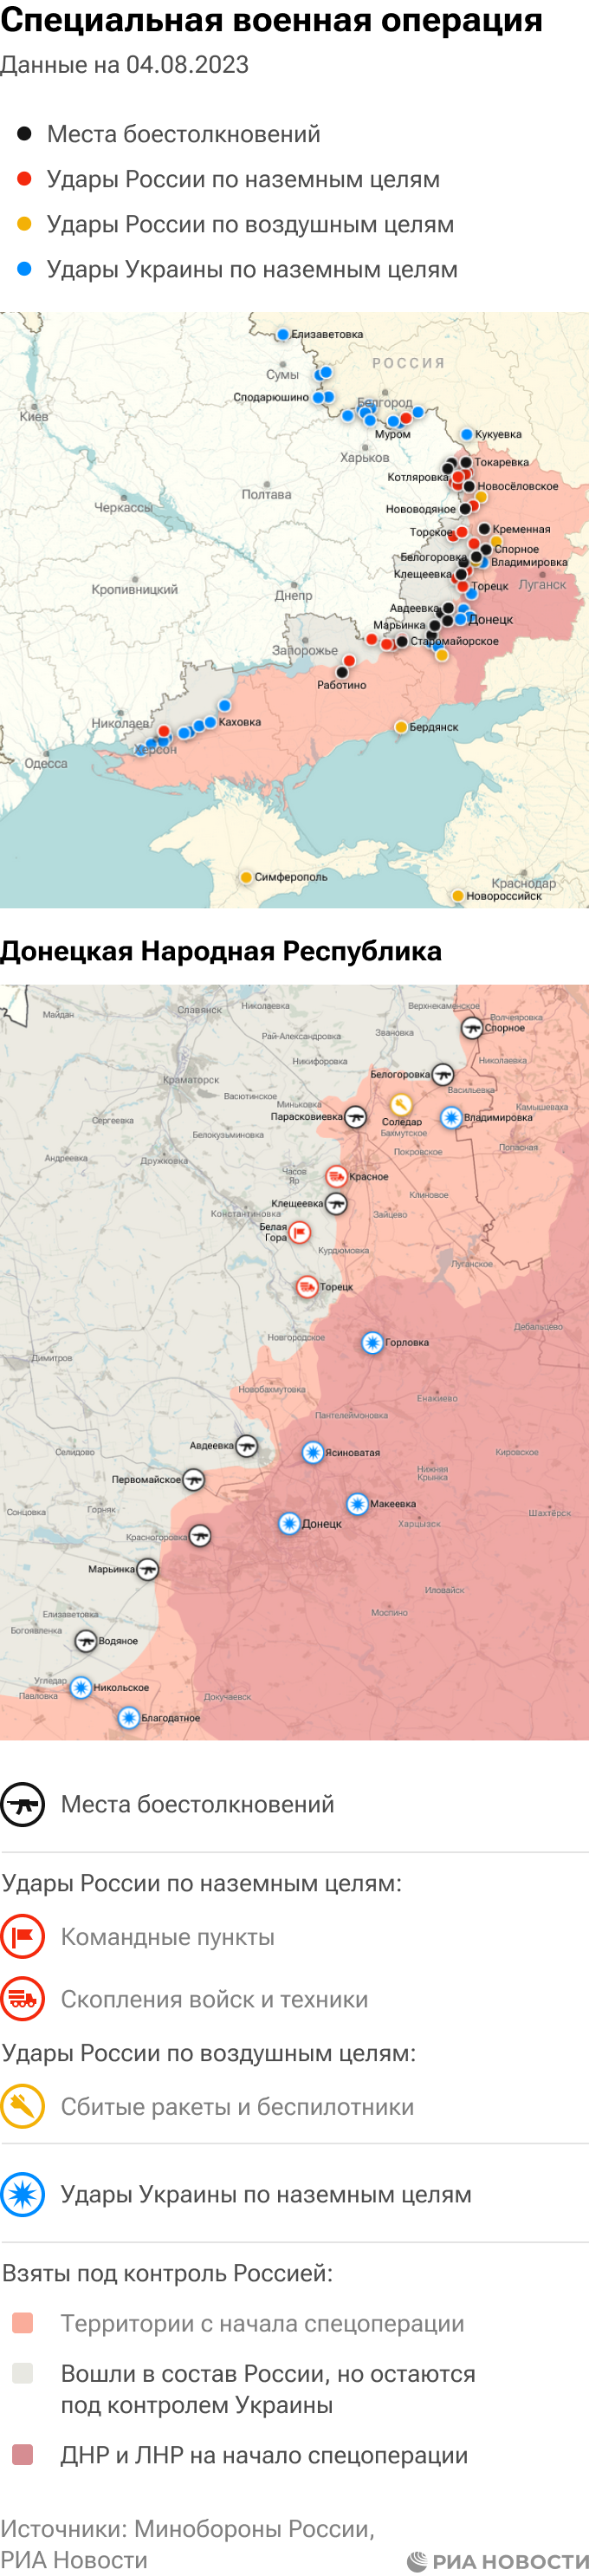 Карта украины на сегодняшний день боевых действий на сегодня